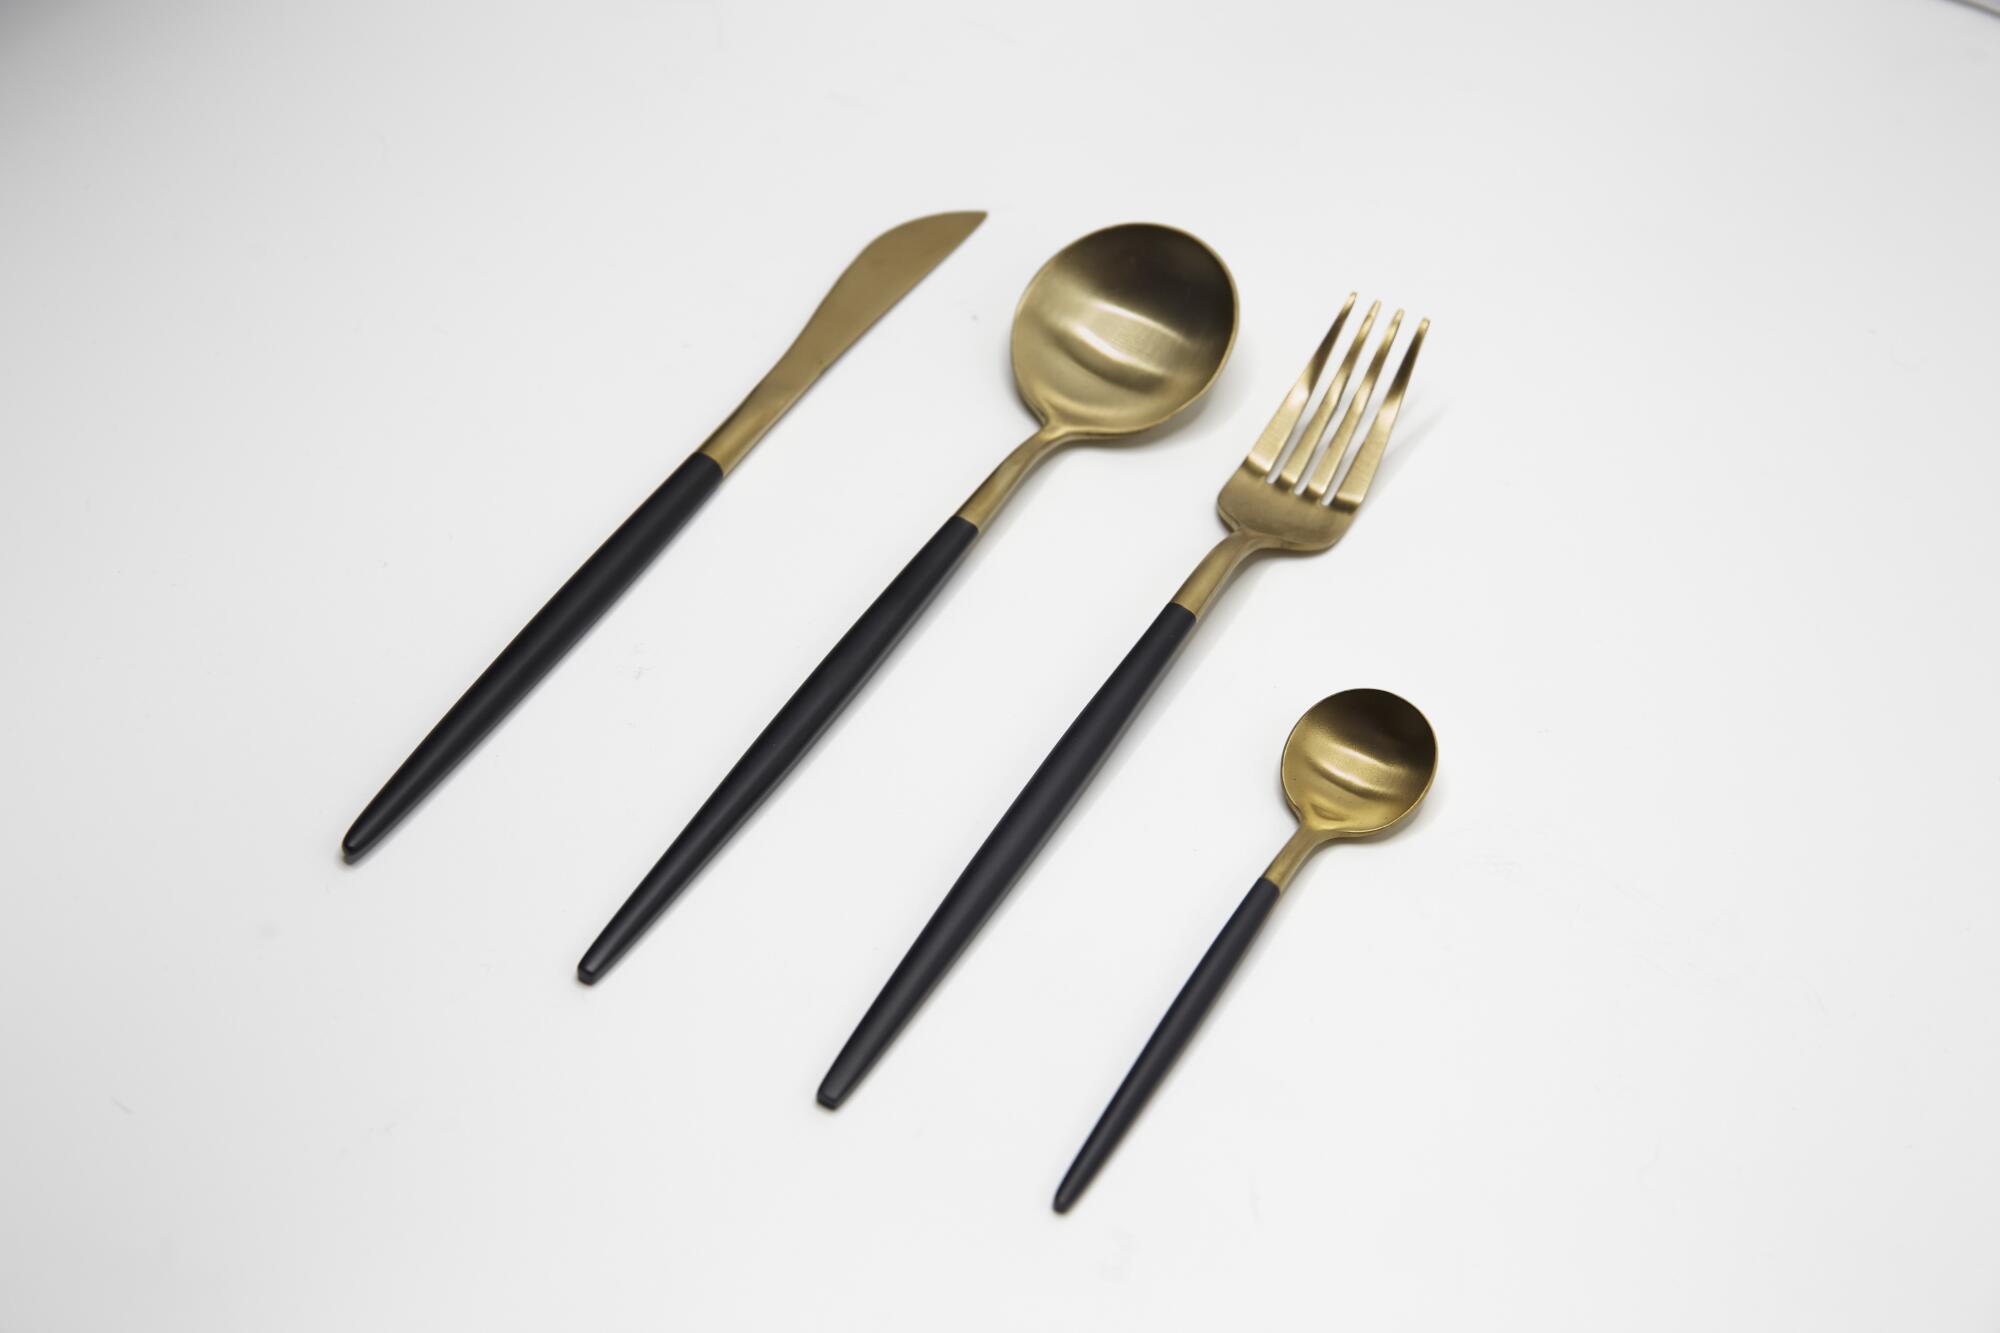 Gold and matte black four-piece set of dishwasher safe utensils